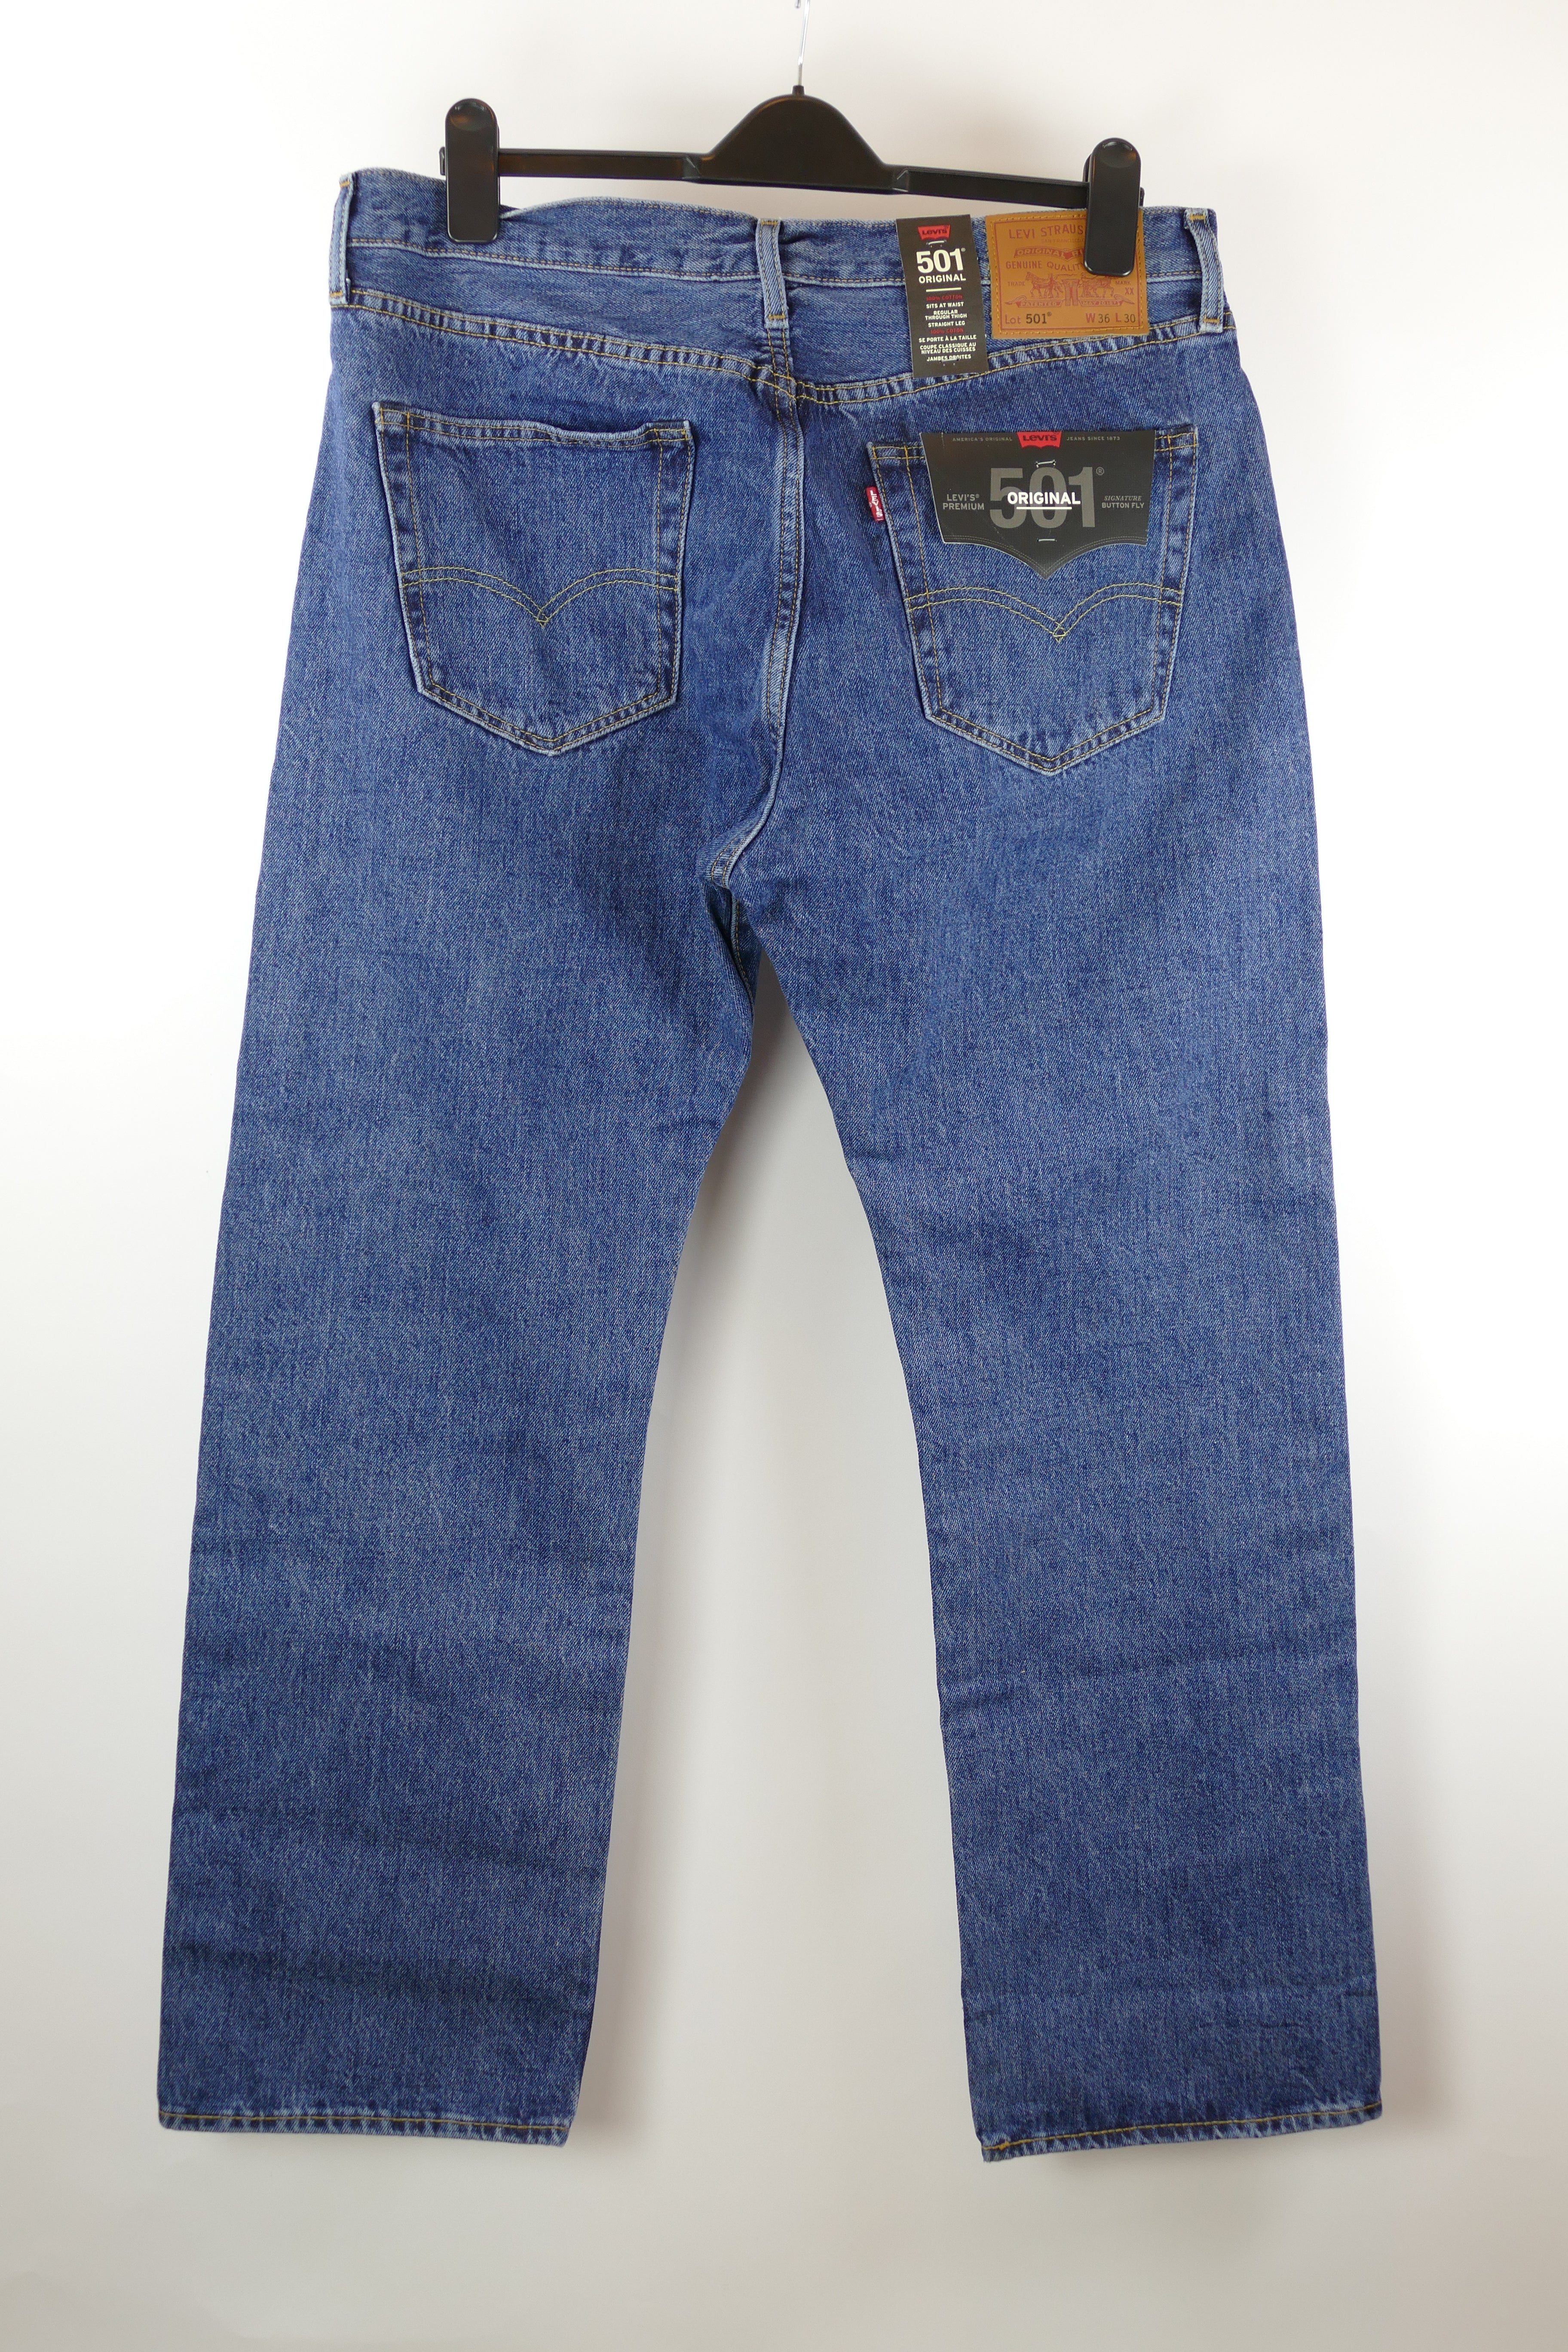 Blaue Herren Jeans, Gr. 52, 501 ORIGINAL LEVI STRAUSS & CO.